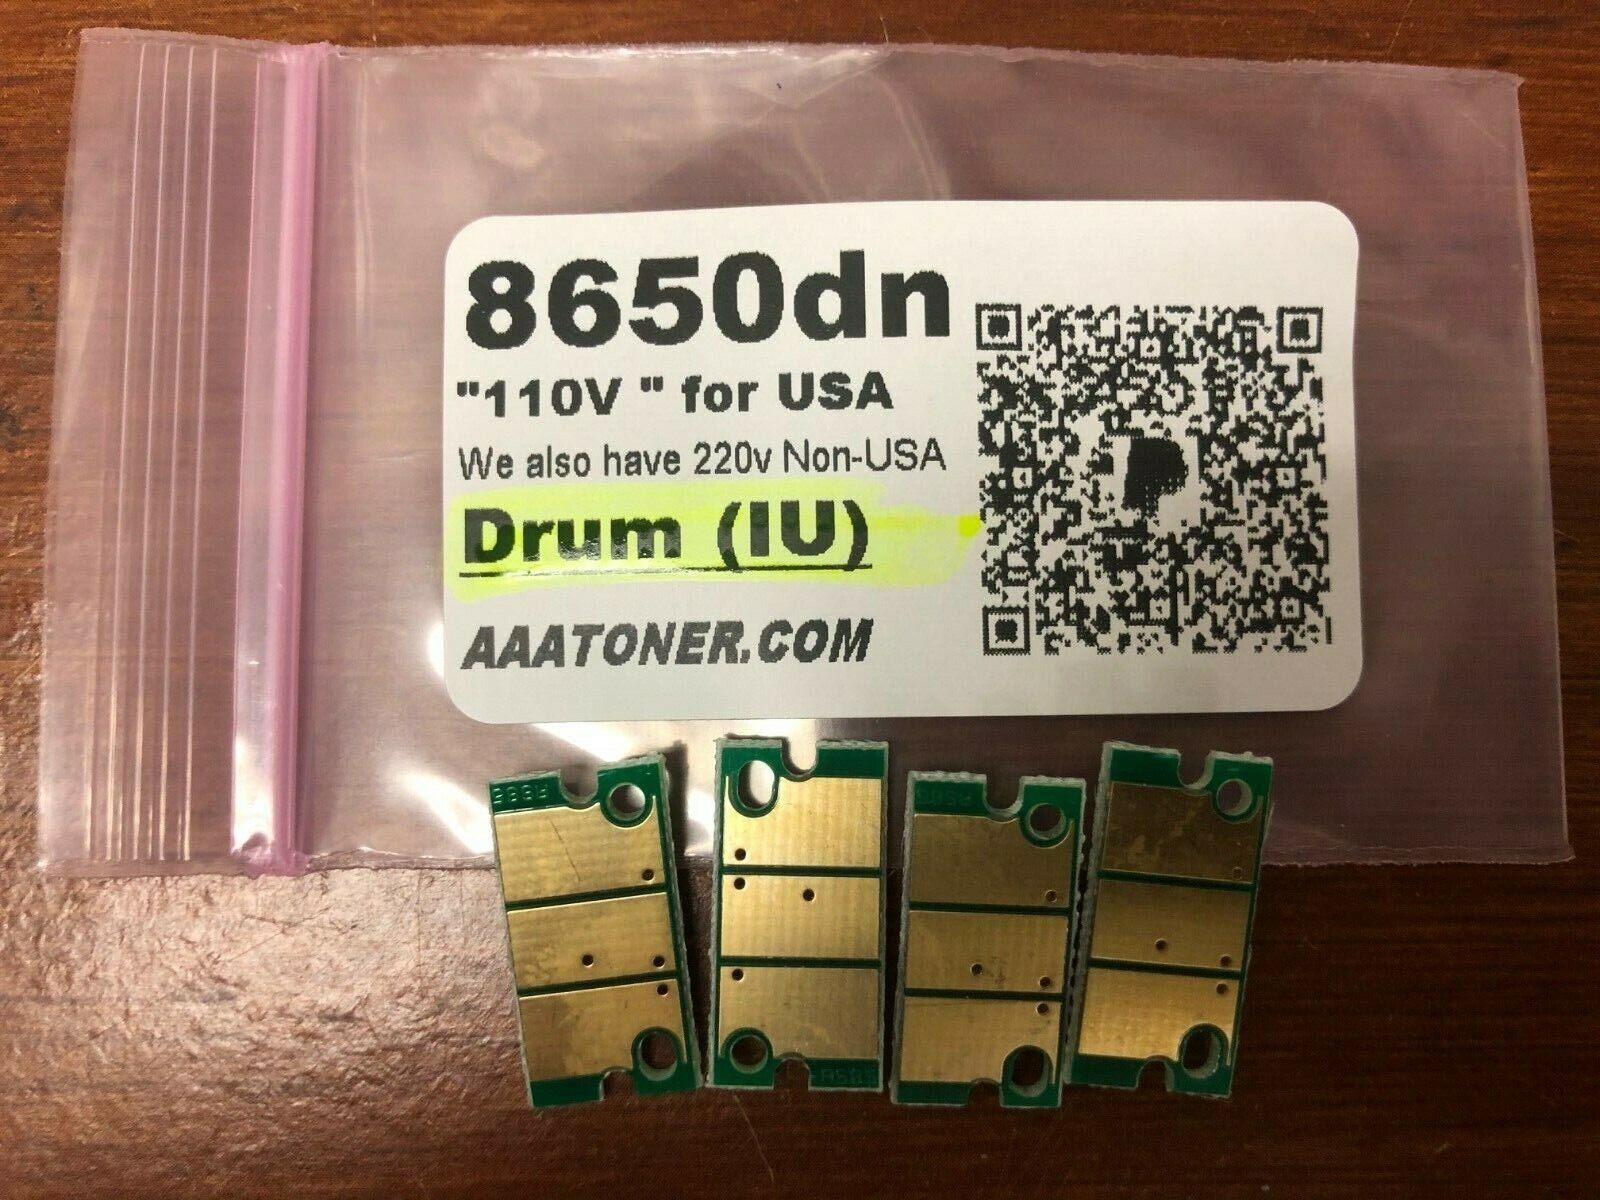 4 x Imaging Drum Chip for Konica Minolta Magicolor 8650, 8650dn, 8650hdn Refill